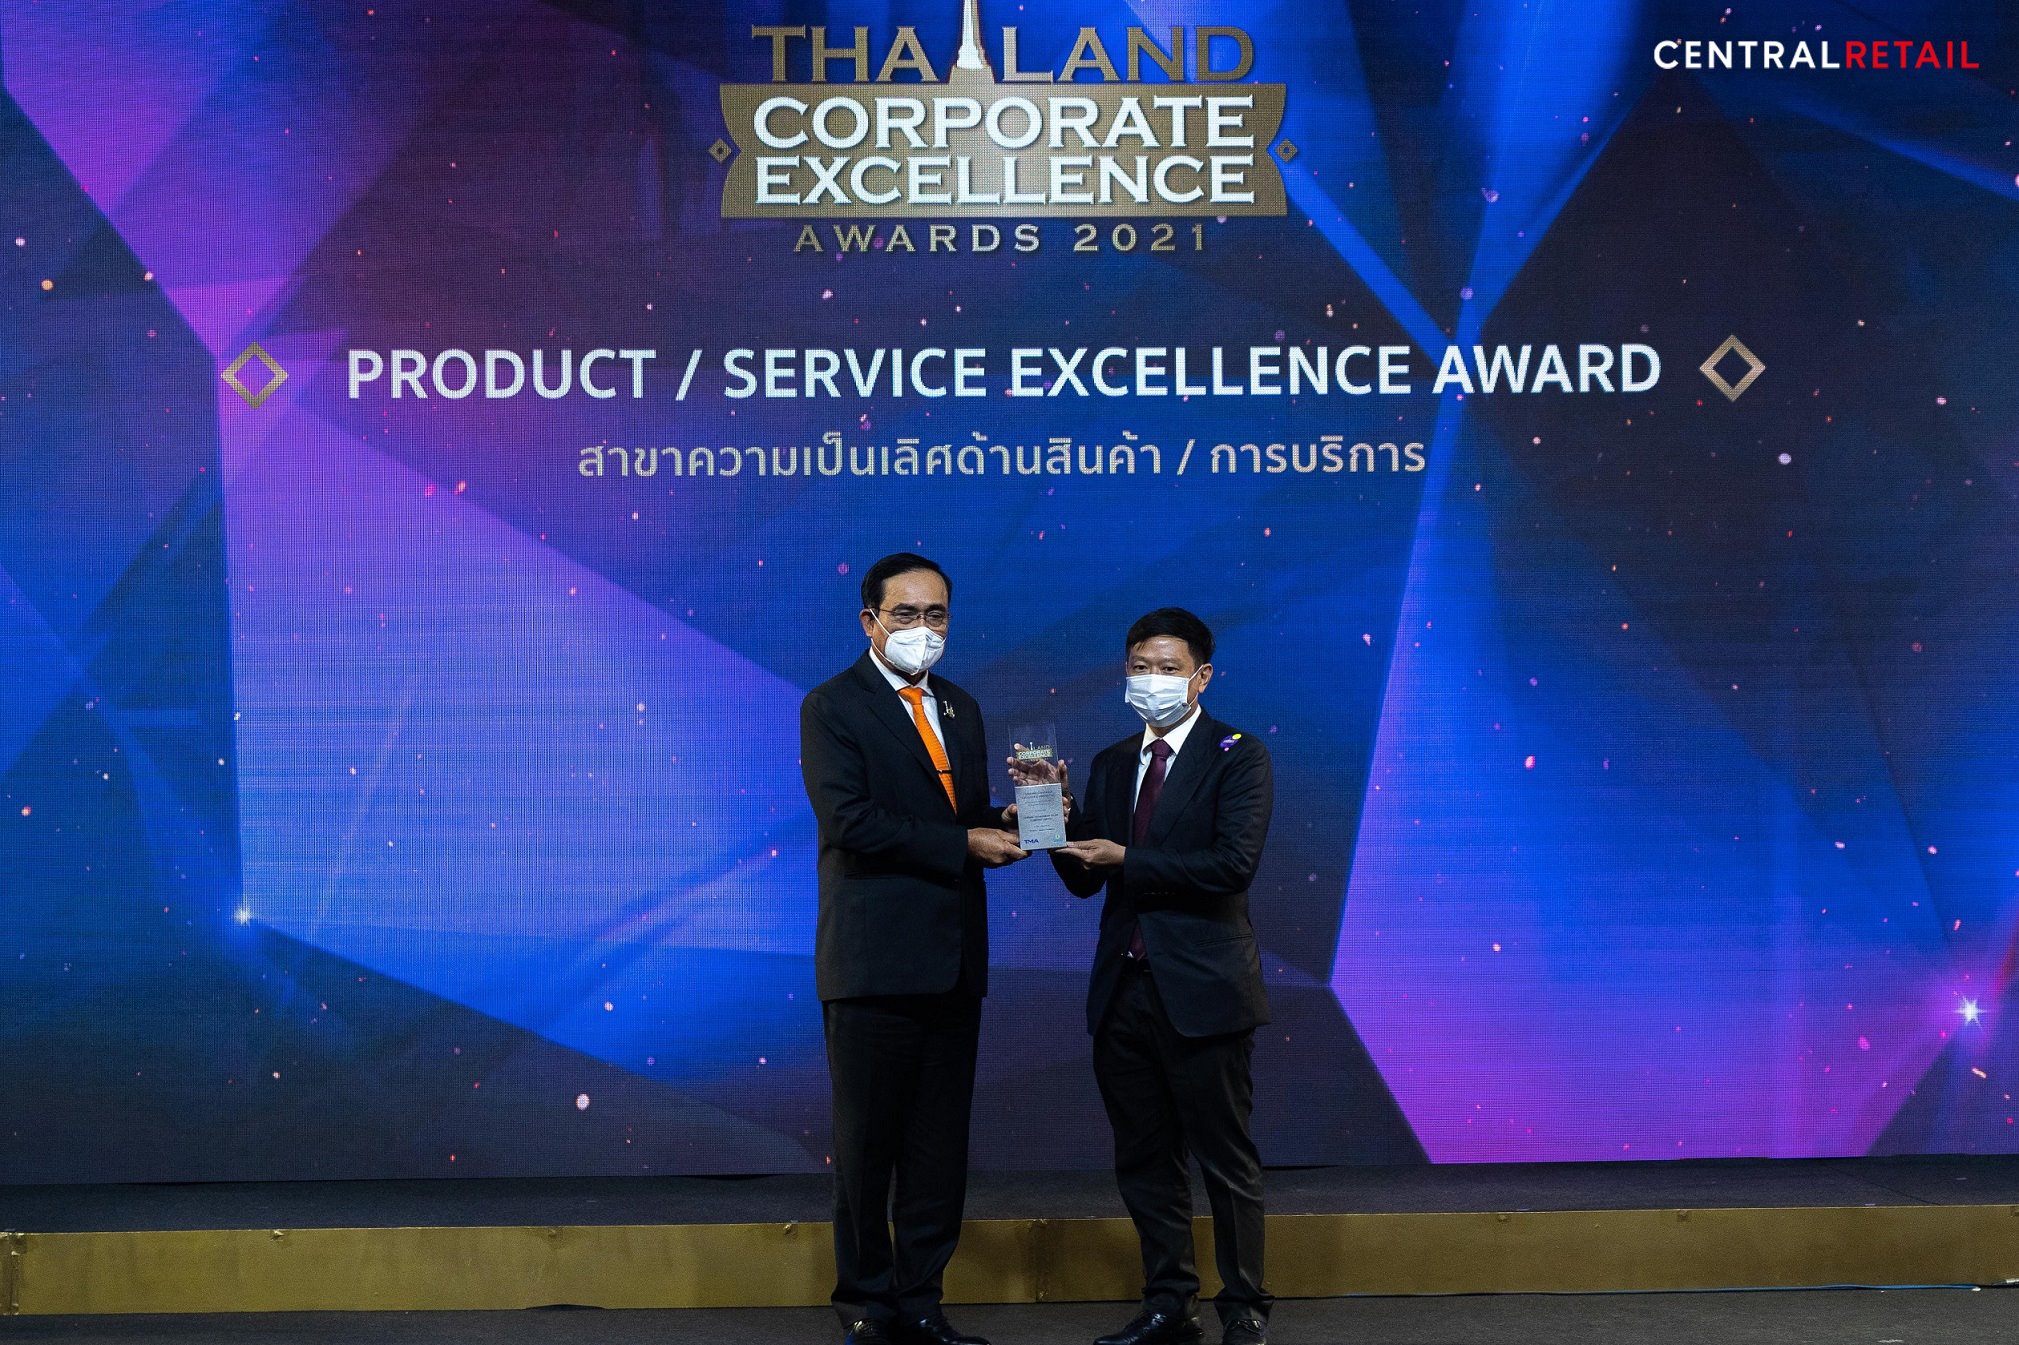 Thailand Corporate Excellence Awards 2021 (สาขาความเป็นเลิศด้านสินค้าและการบริการ)